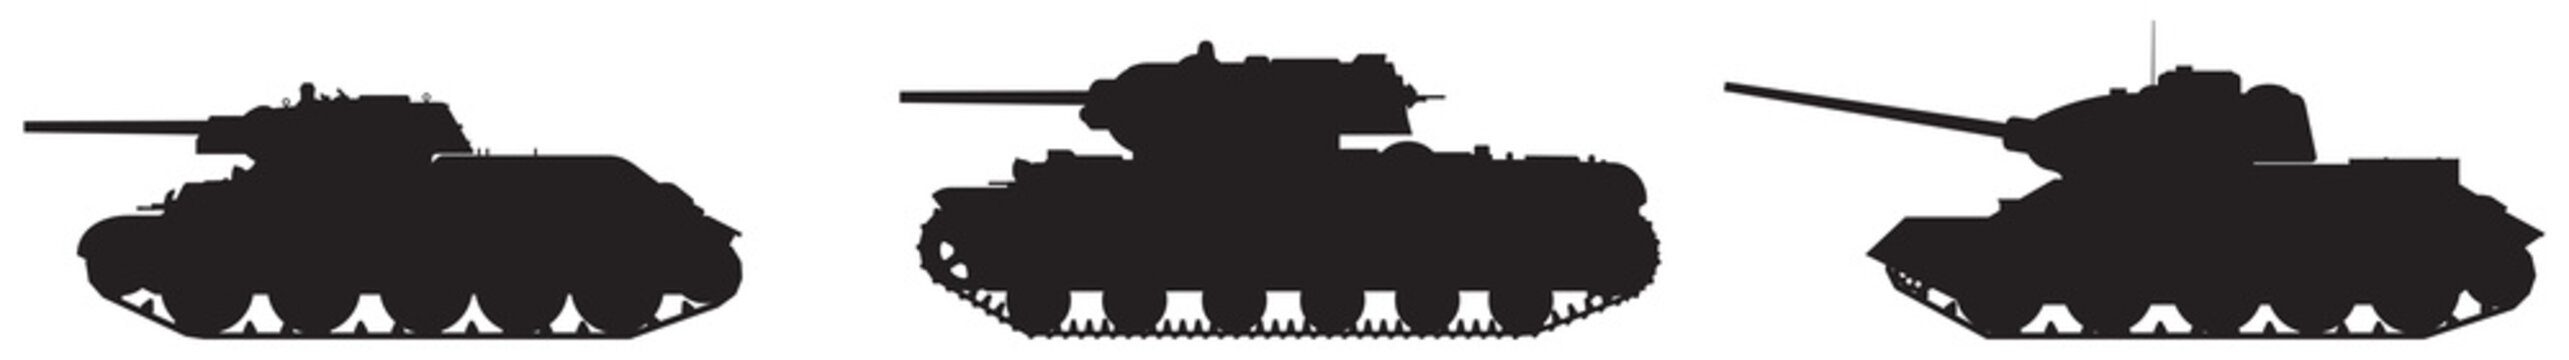 Tank army vector silhouettes, WW2 Soviet Russian T-34 76 medium tank, KV-1 heavy tank and T-34 85 medium tank in Moscow, Leningrad, Stalingrad, Kiev, Odessa, Sevastopol, Kharkov and Kursk battles